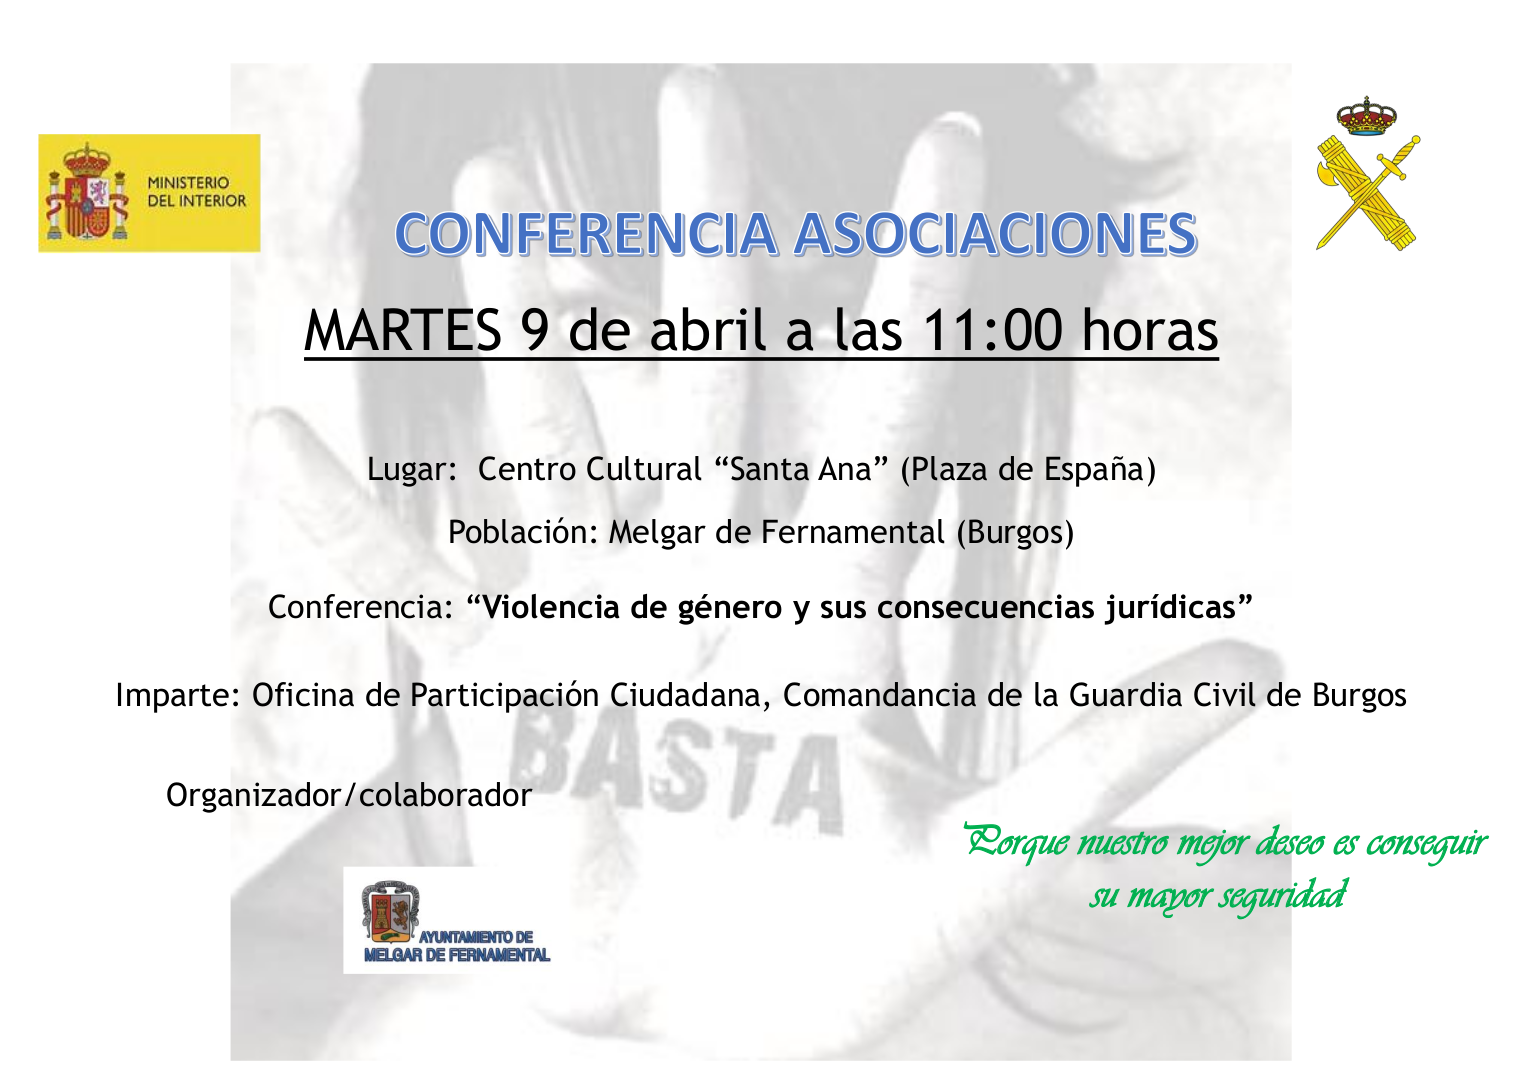 Conferencia: "Violencia de género y sus consecuencias jurídicas"